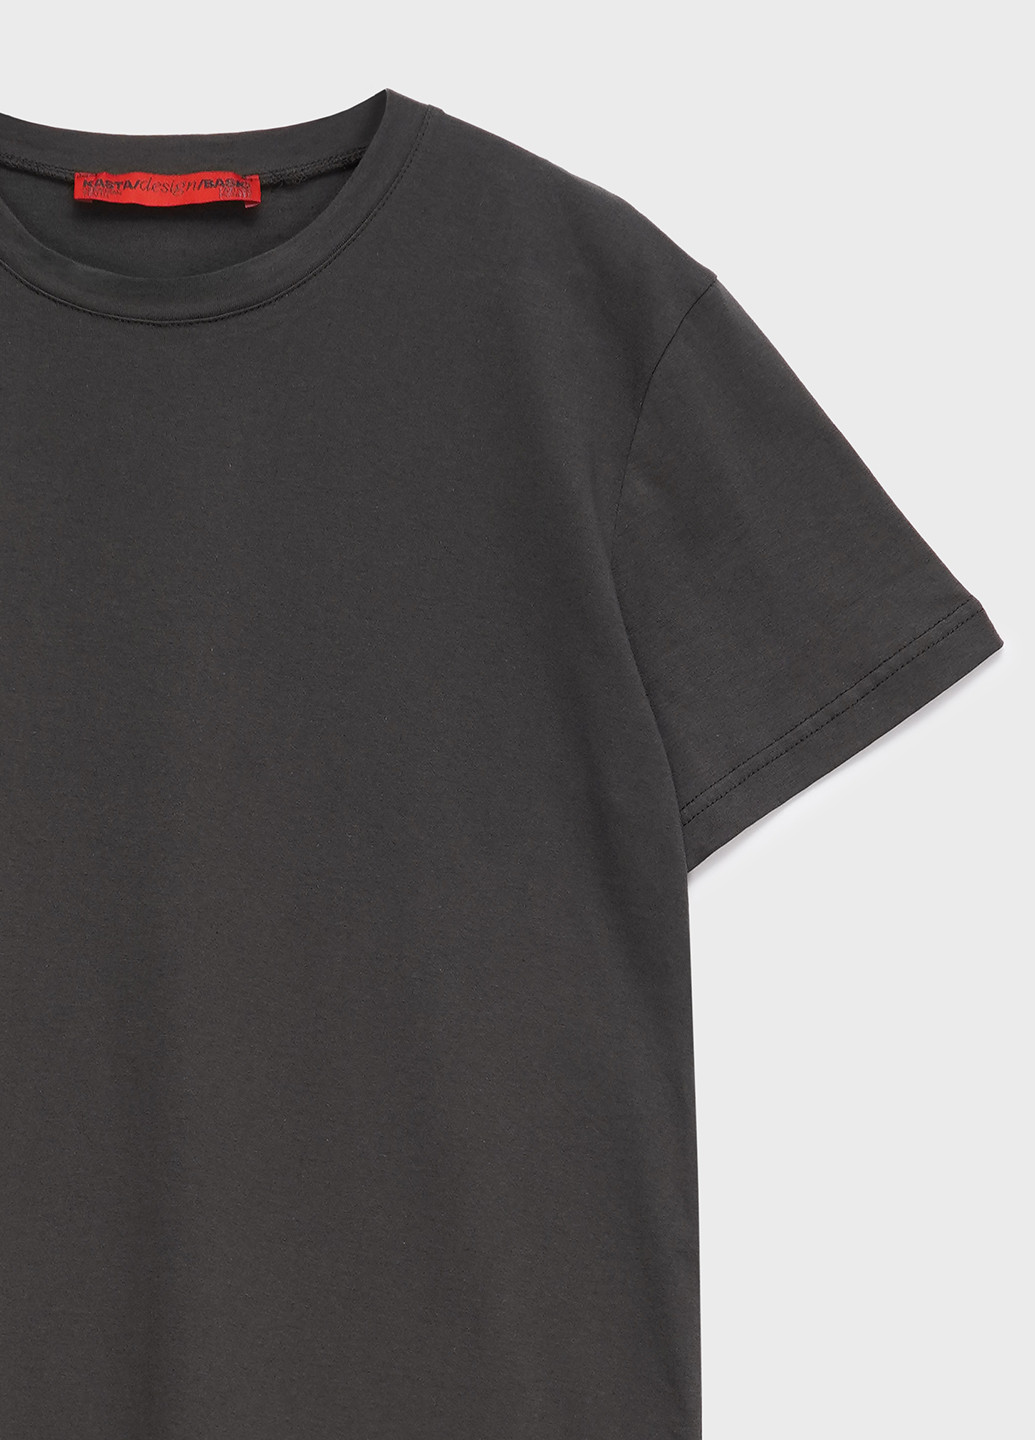 Хакі (оливкова) футболка чоловіча базова KASTA design